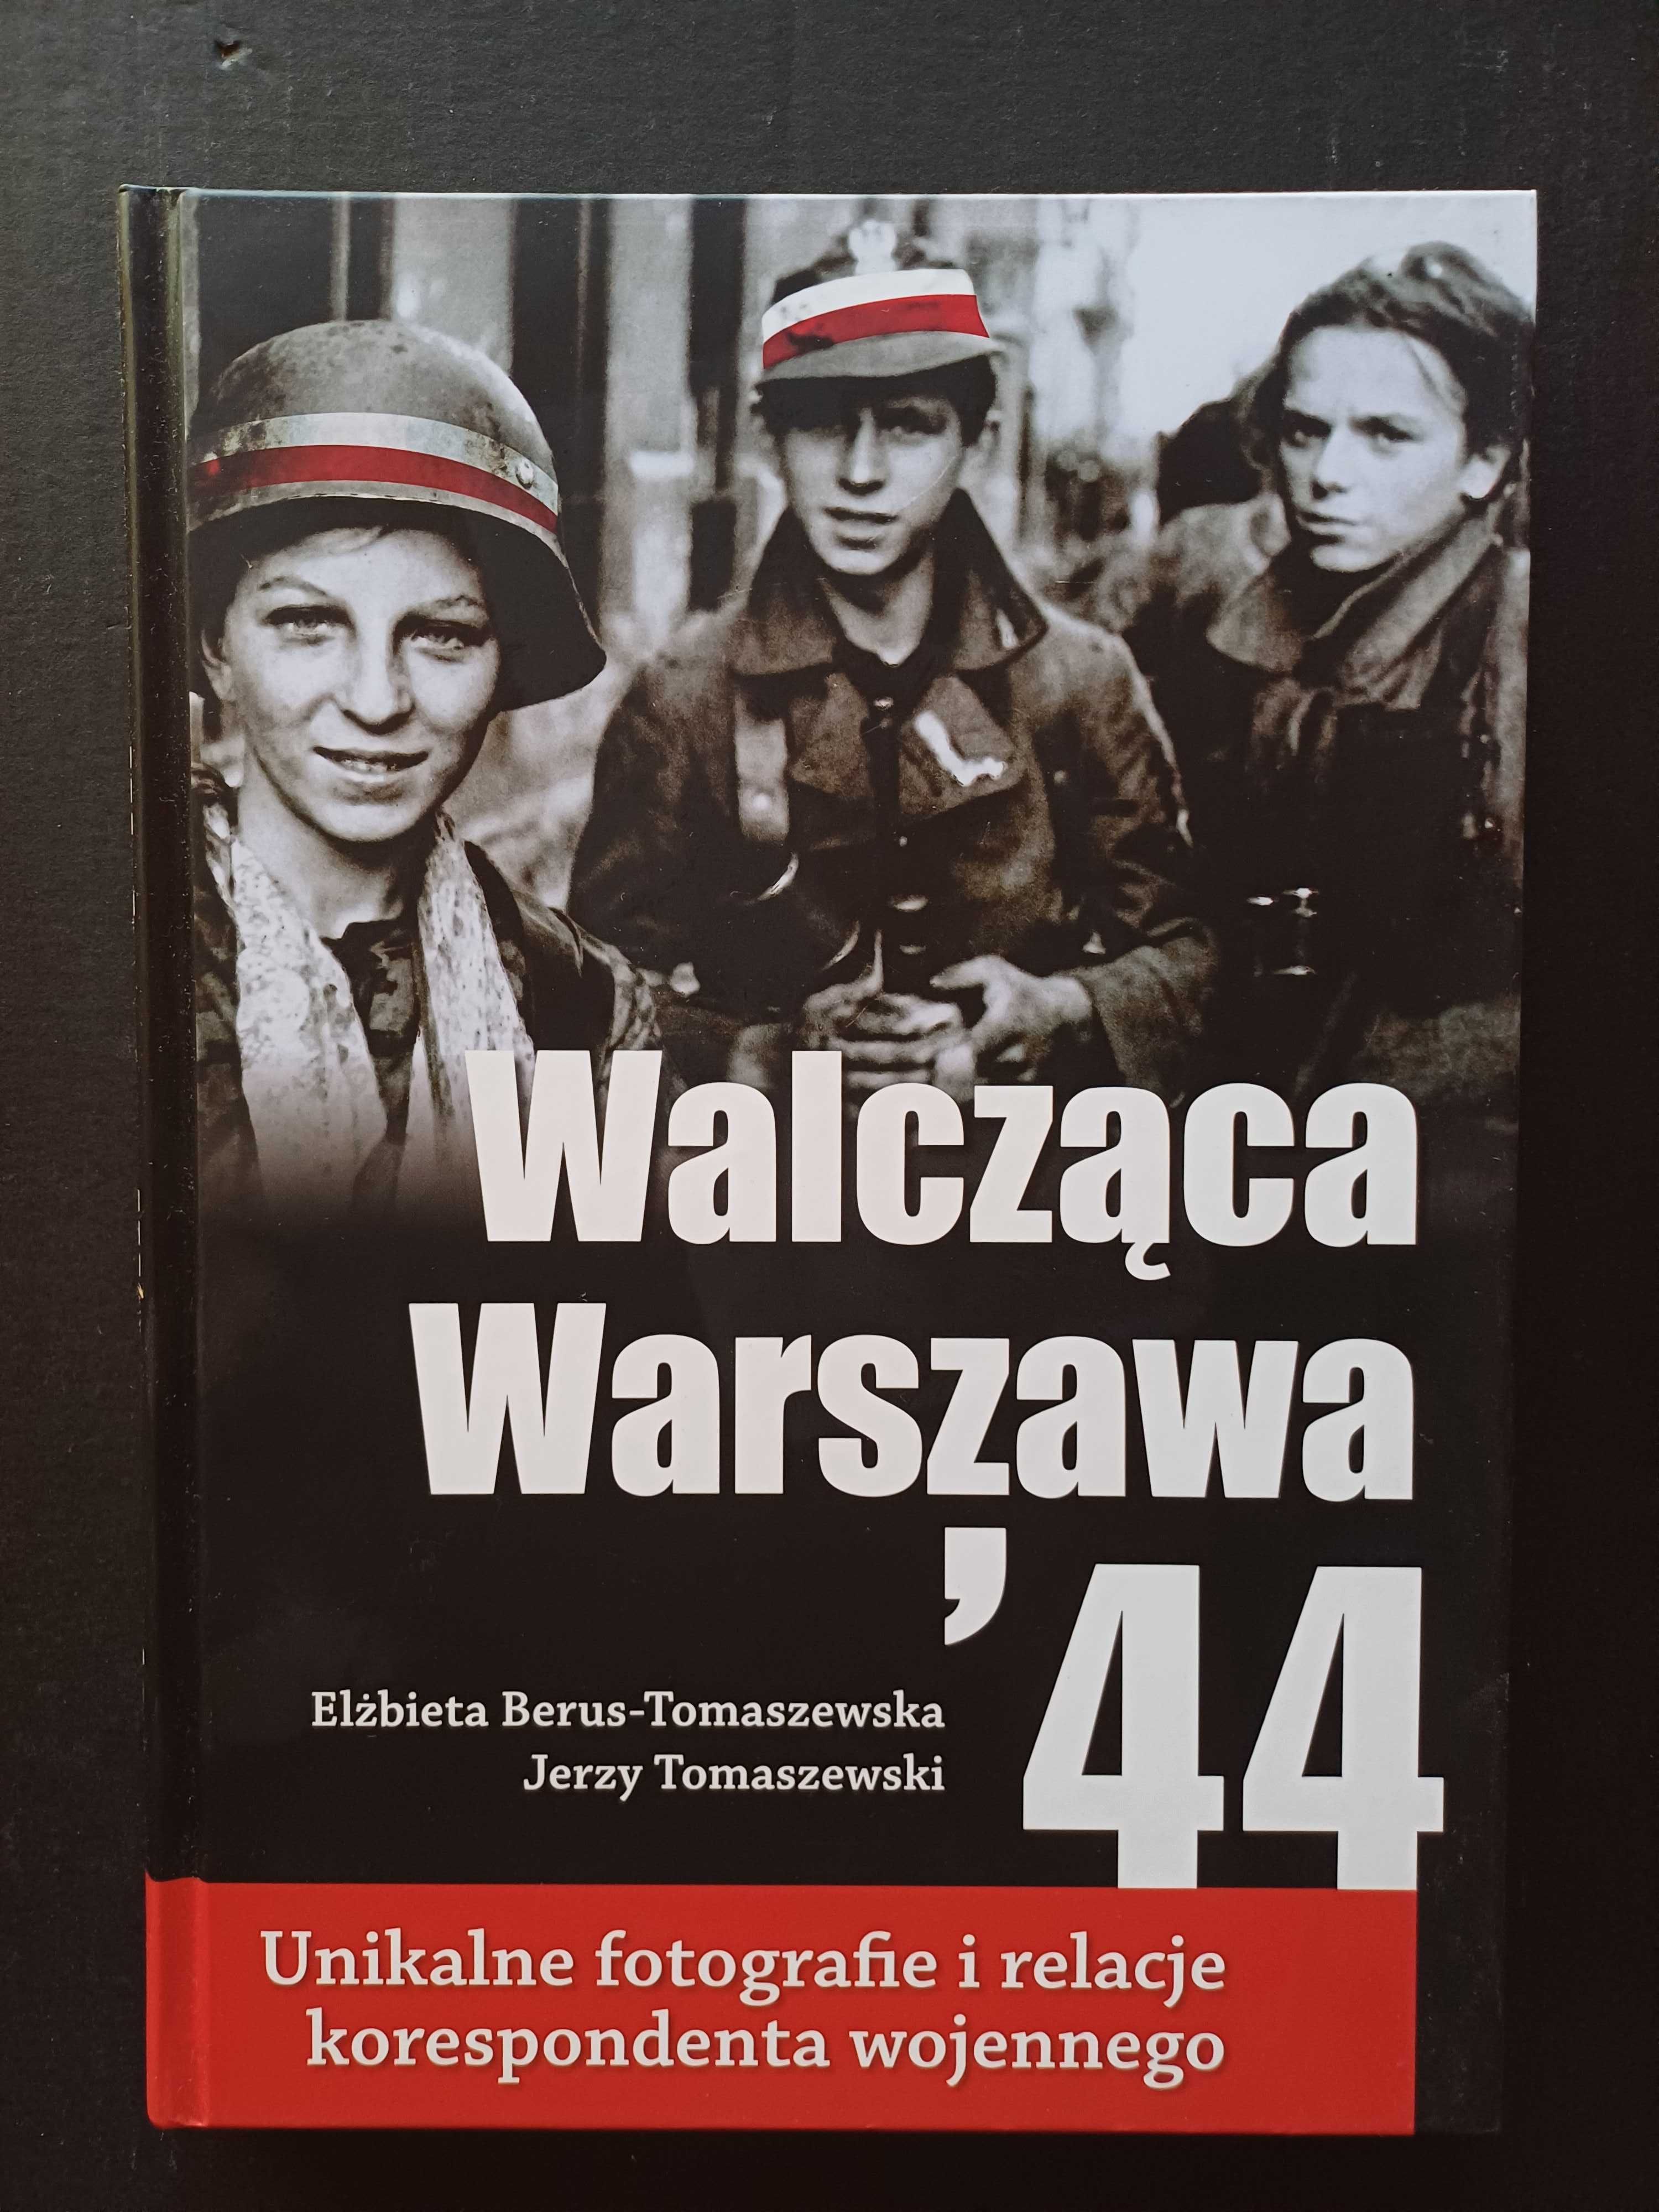 Walcząca Warszawa' 44 Borus Tomaszewski charytatywnie